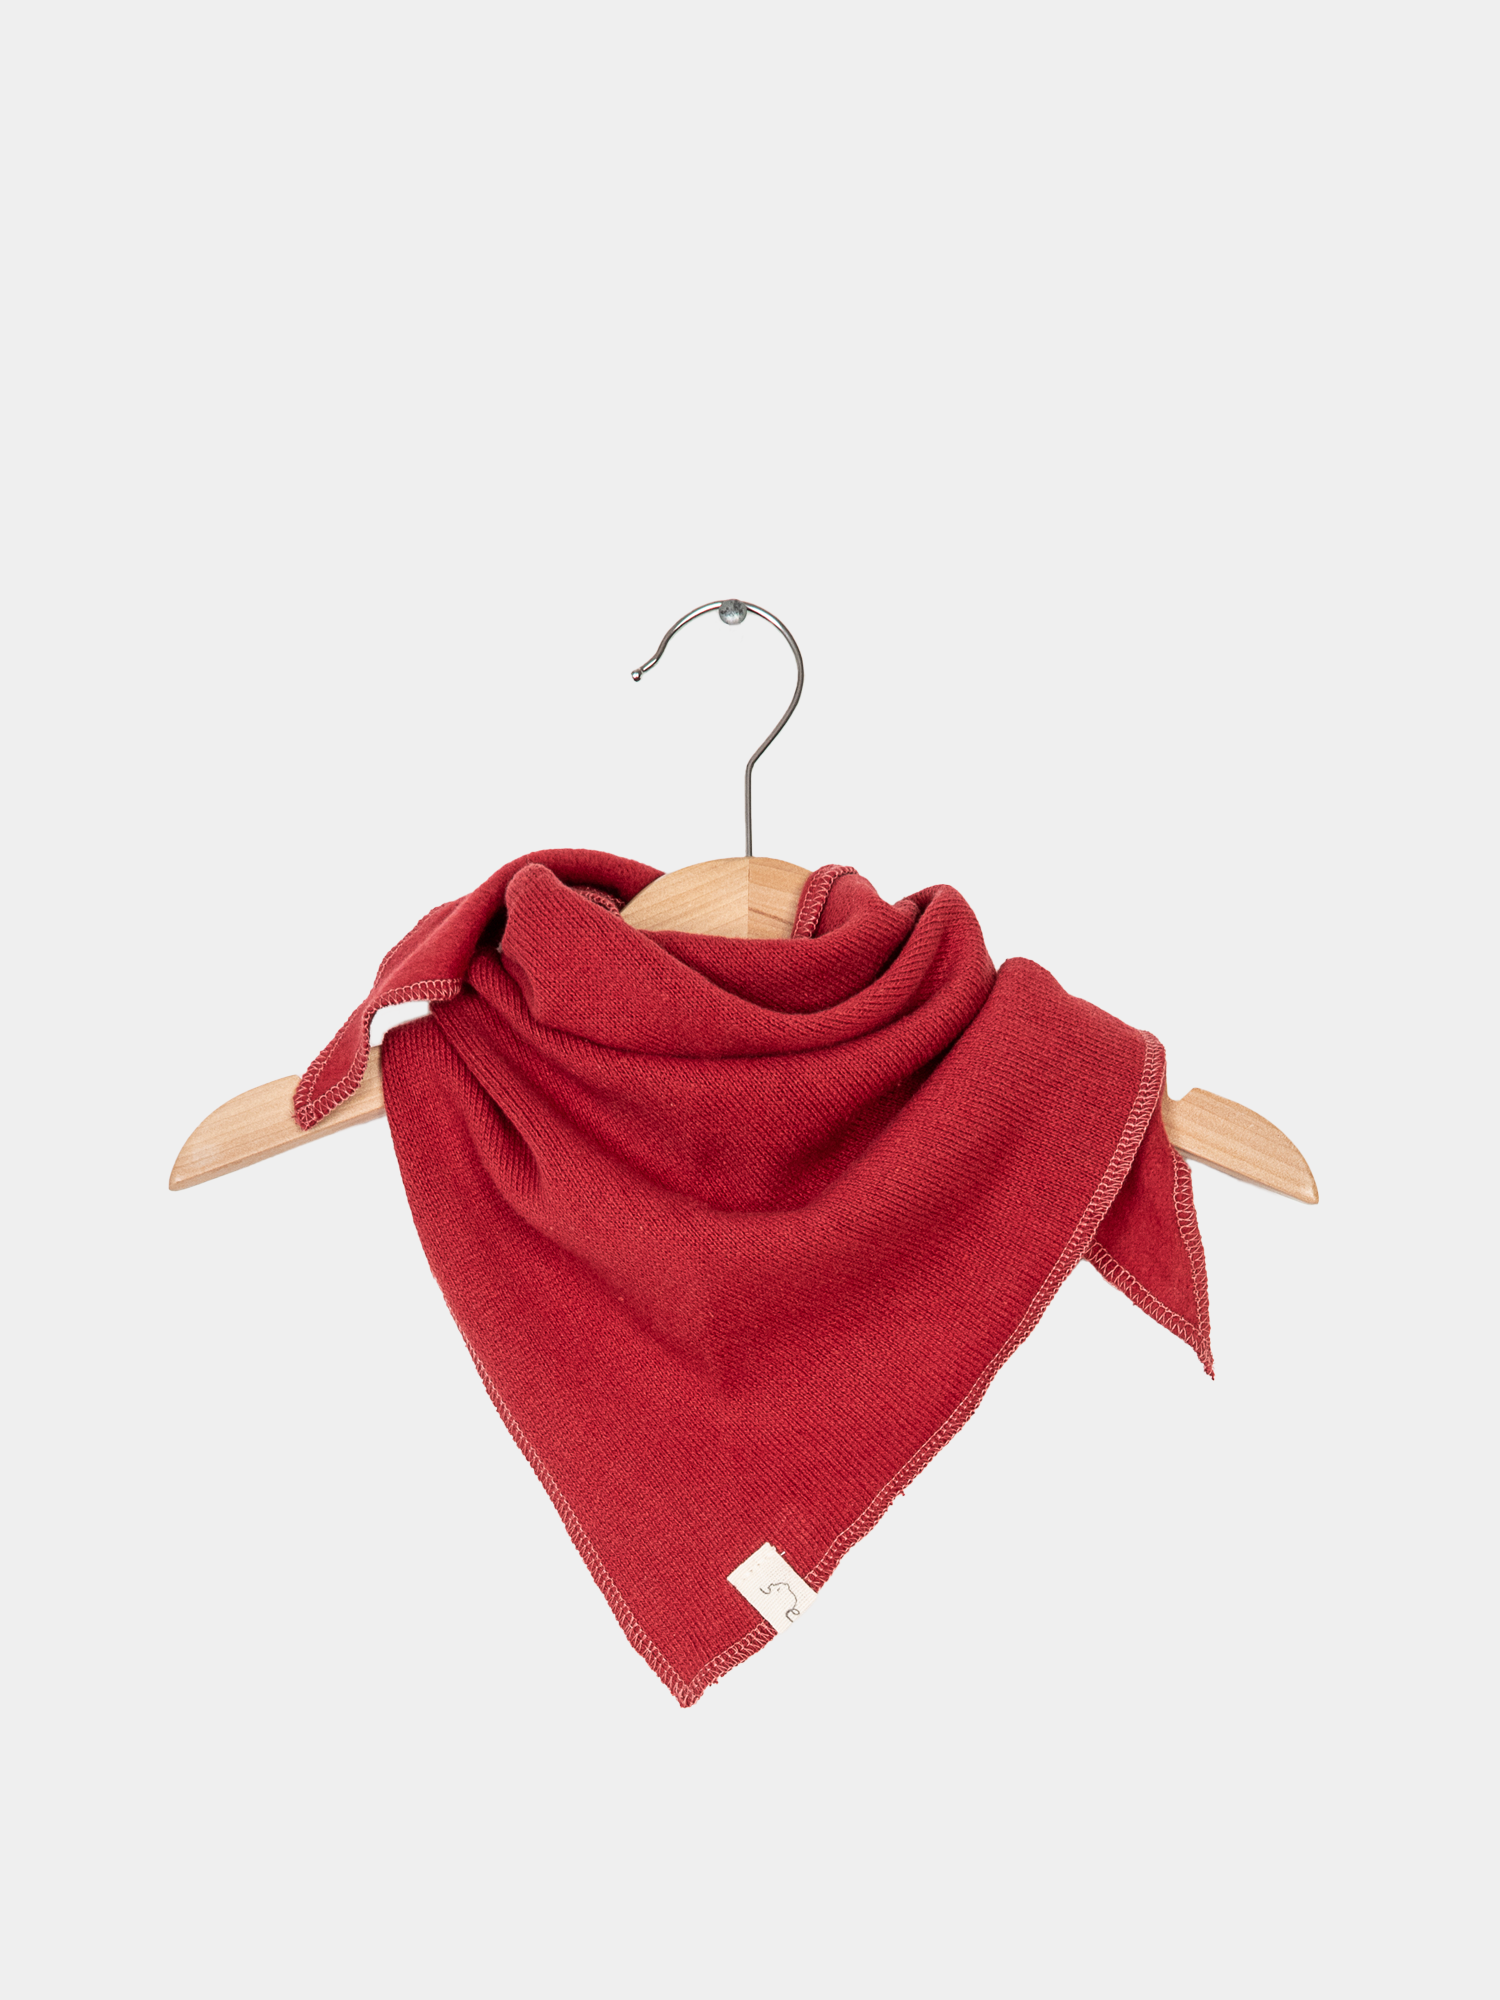 Triangular scarf knit - strawberry